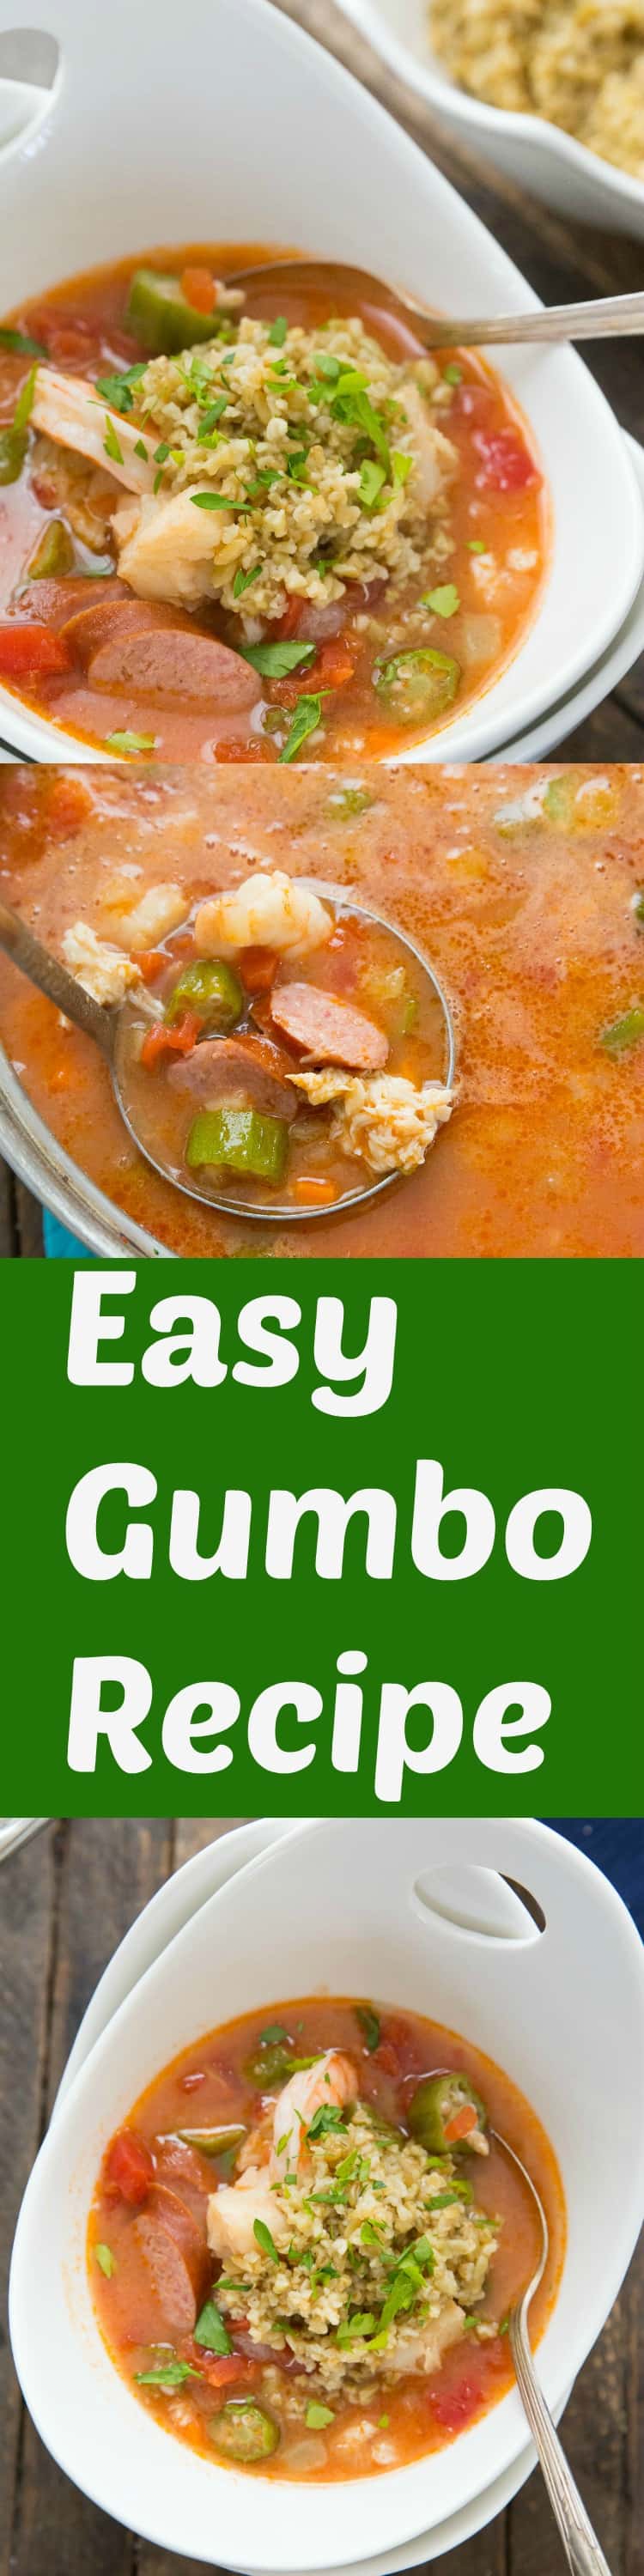 Easy Gumbo Recipe - LemonsforLulu.com